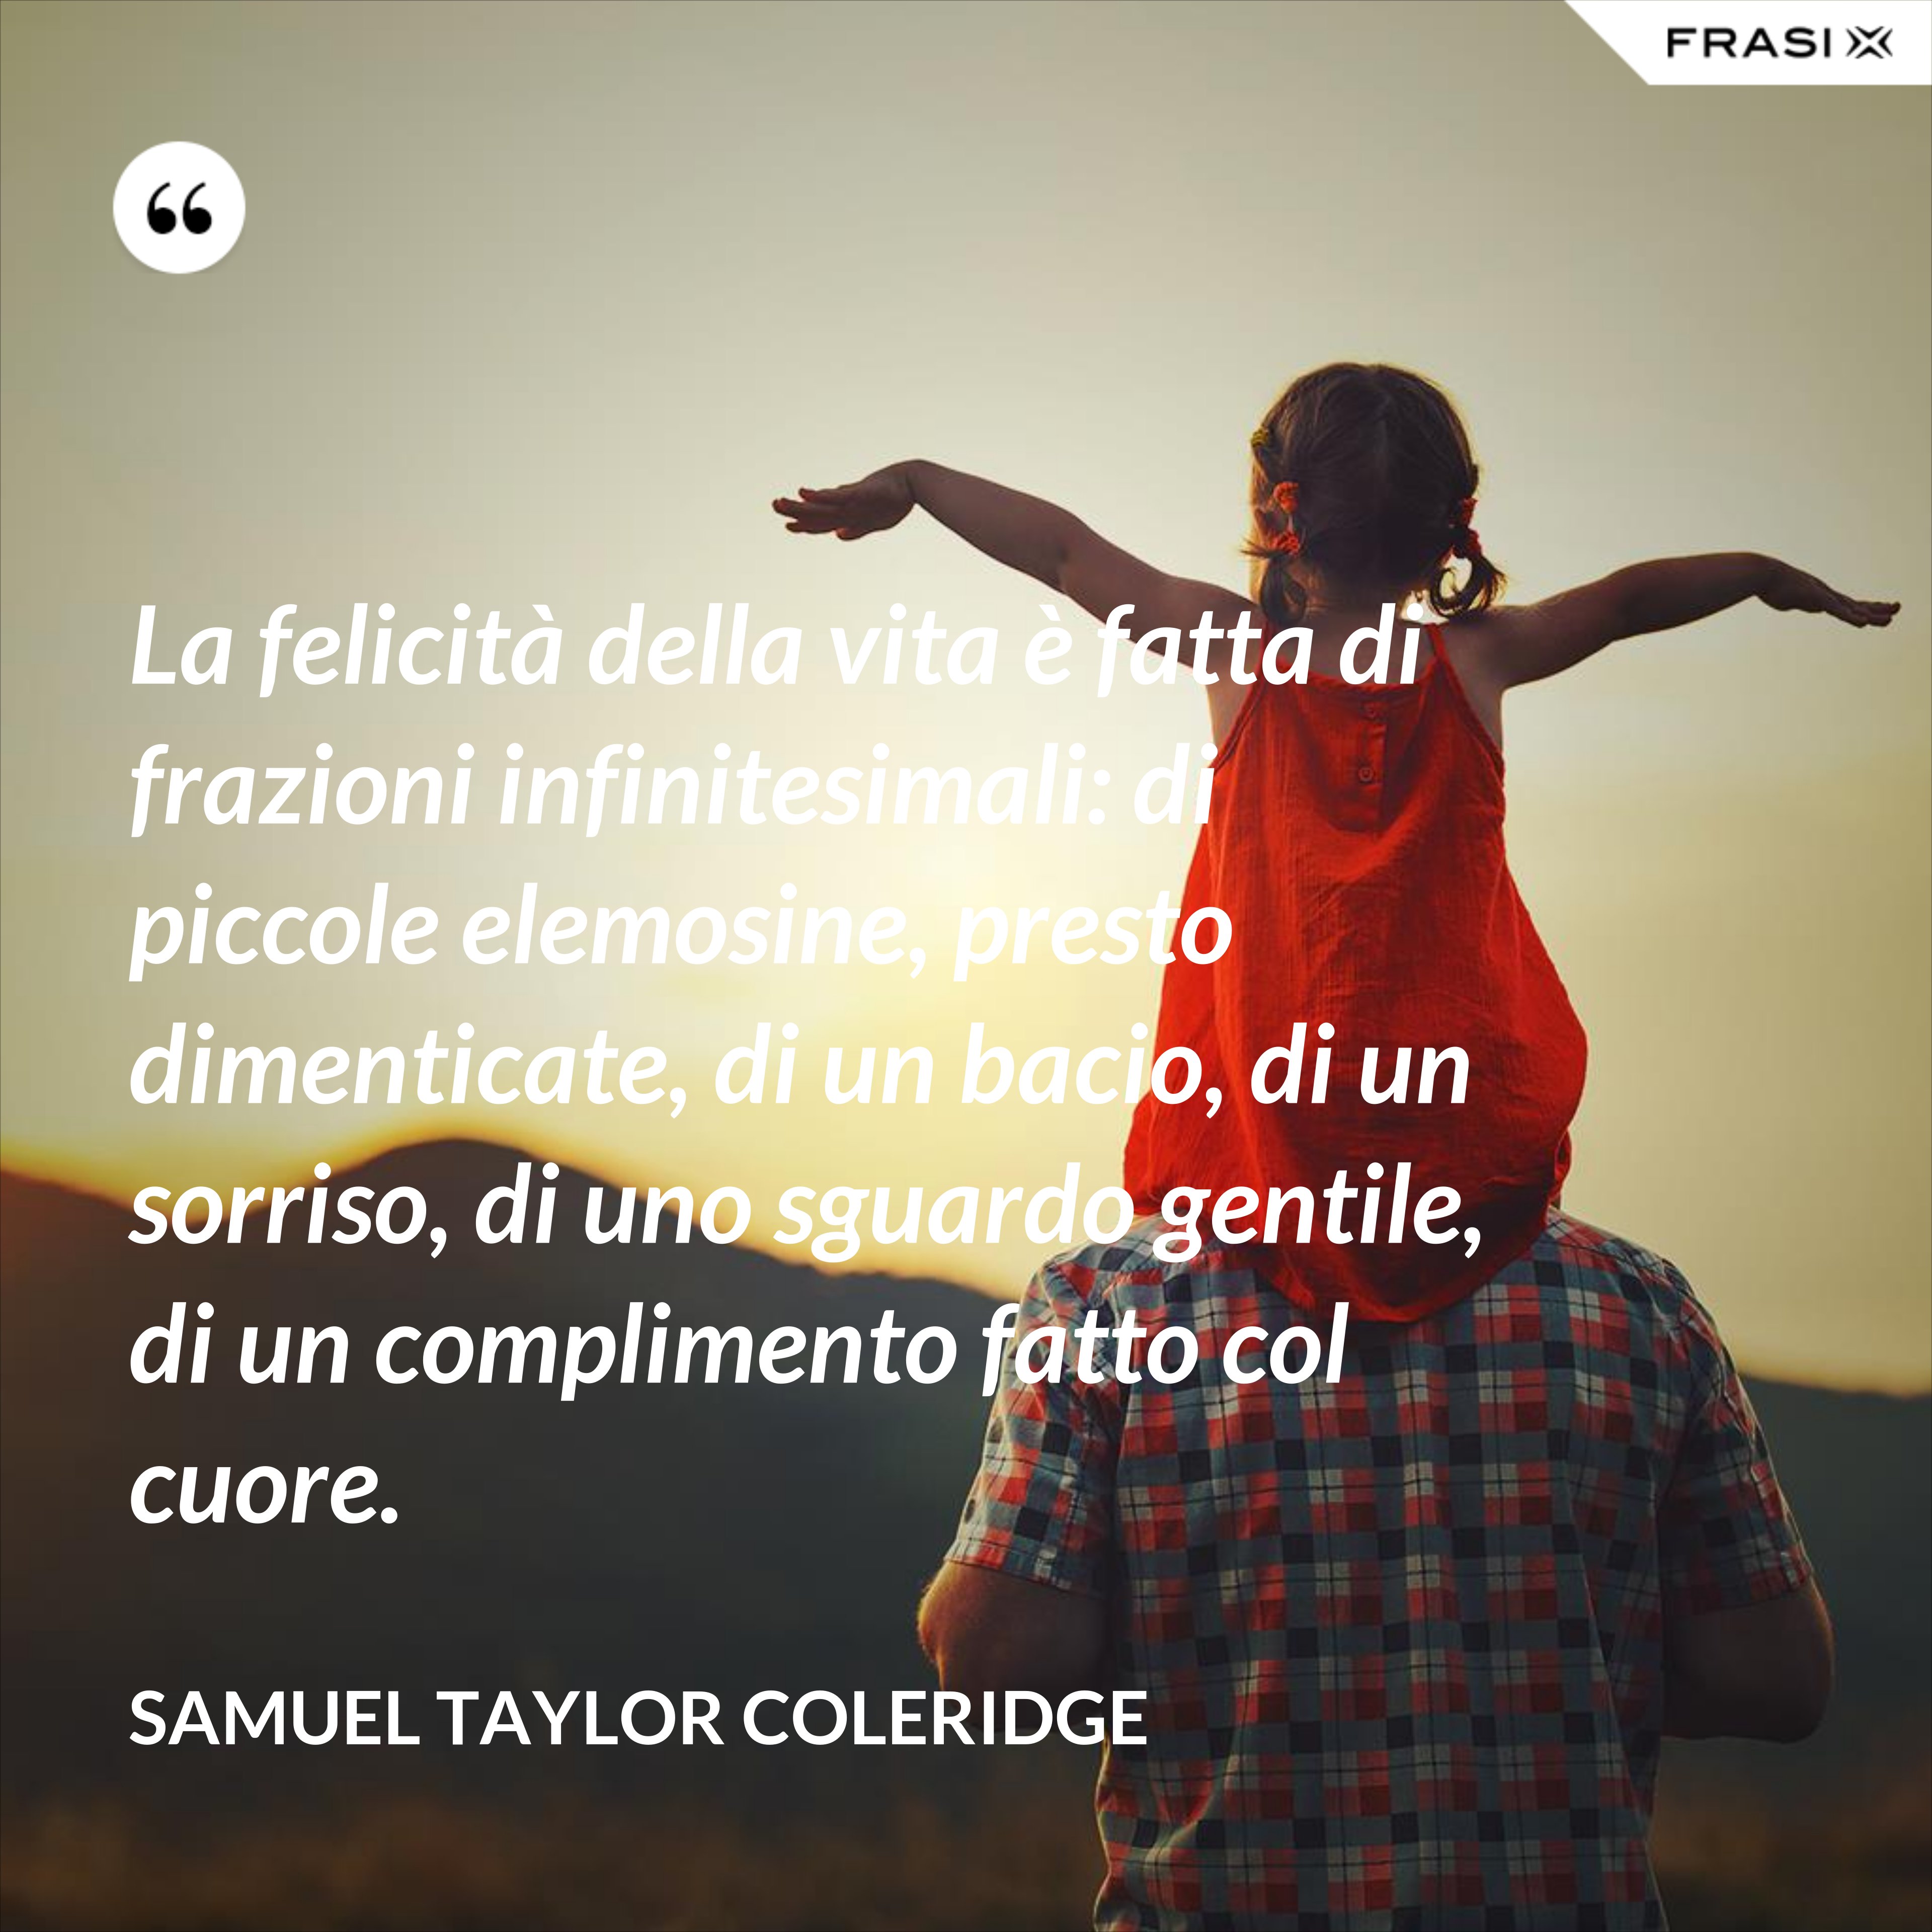 La felicità della vita è fatta di frazioni infinitesimali: di piccole elemosine, presto dimenticate, di un bacio, di un sorriso, di uno sguardo gentile, di un complimento fatto col cuore. - Samuel Taylor Coleridge